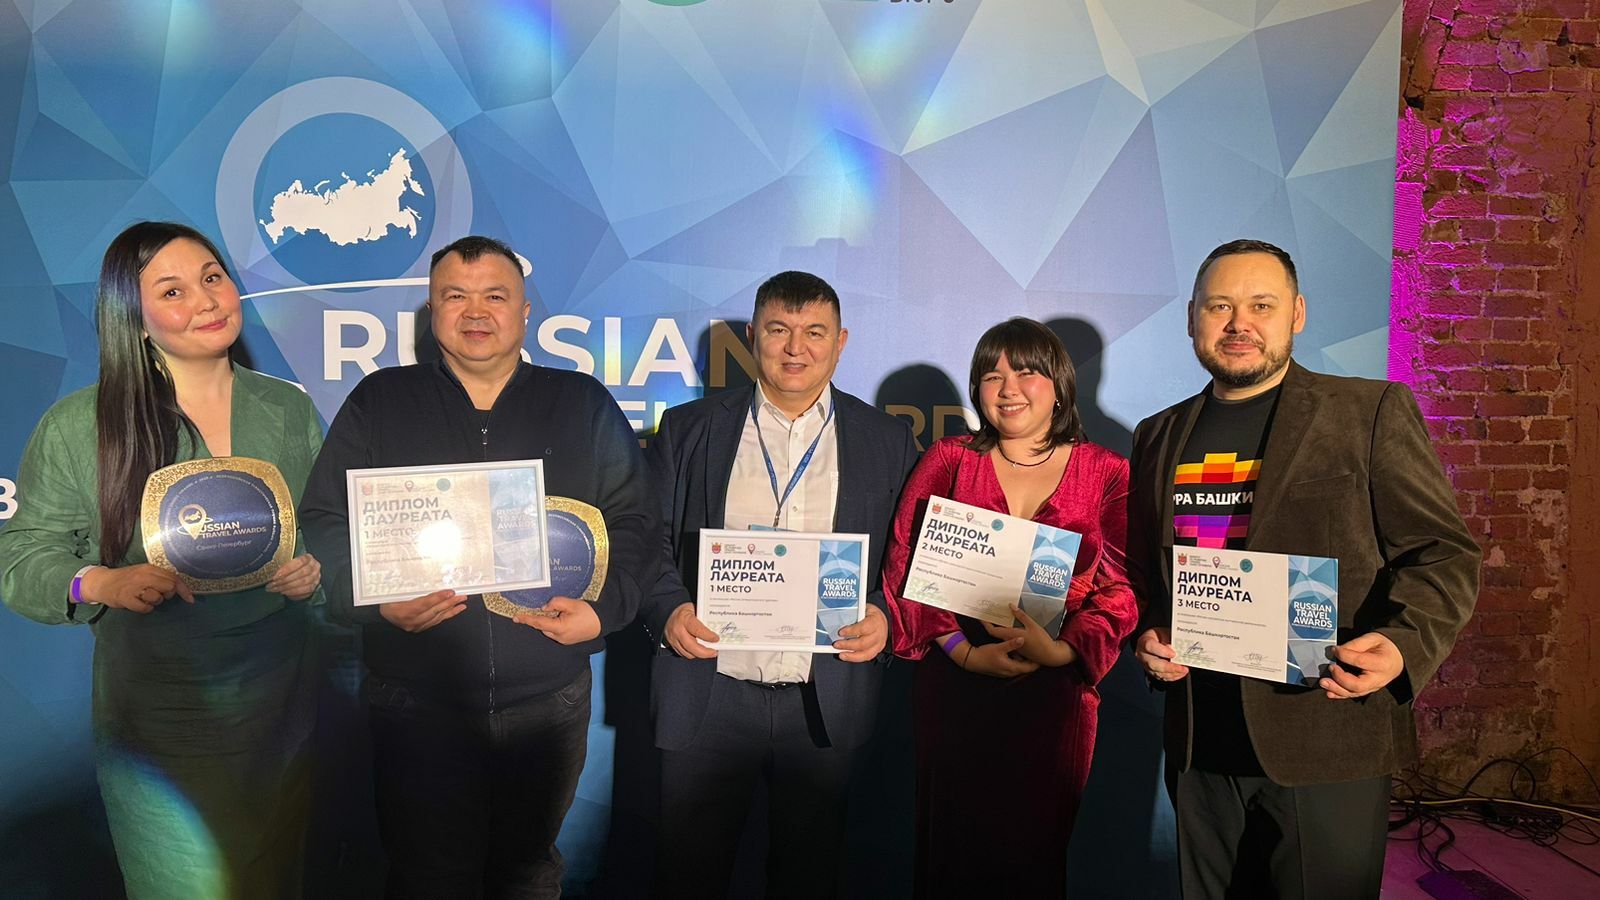 Башкирия признана регионом этнокультурного туризма и регионом турмаршрутов и экскурсионных программ по версии Russian Travel Awards